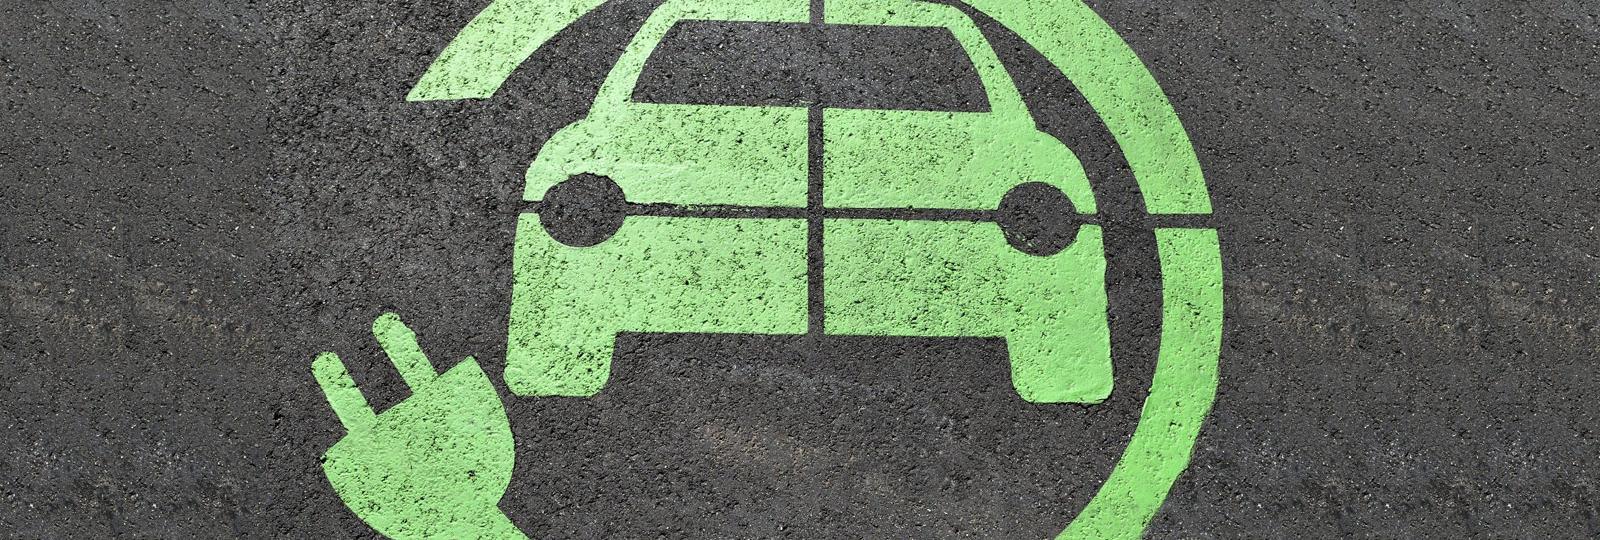 Descarbonización segura del vehículo eléctrico privado